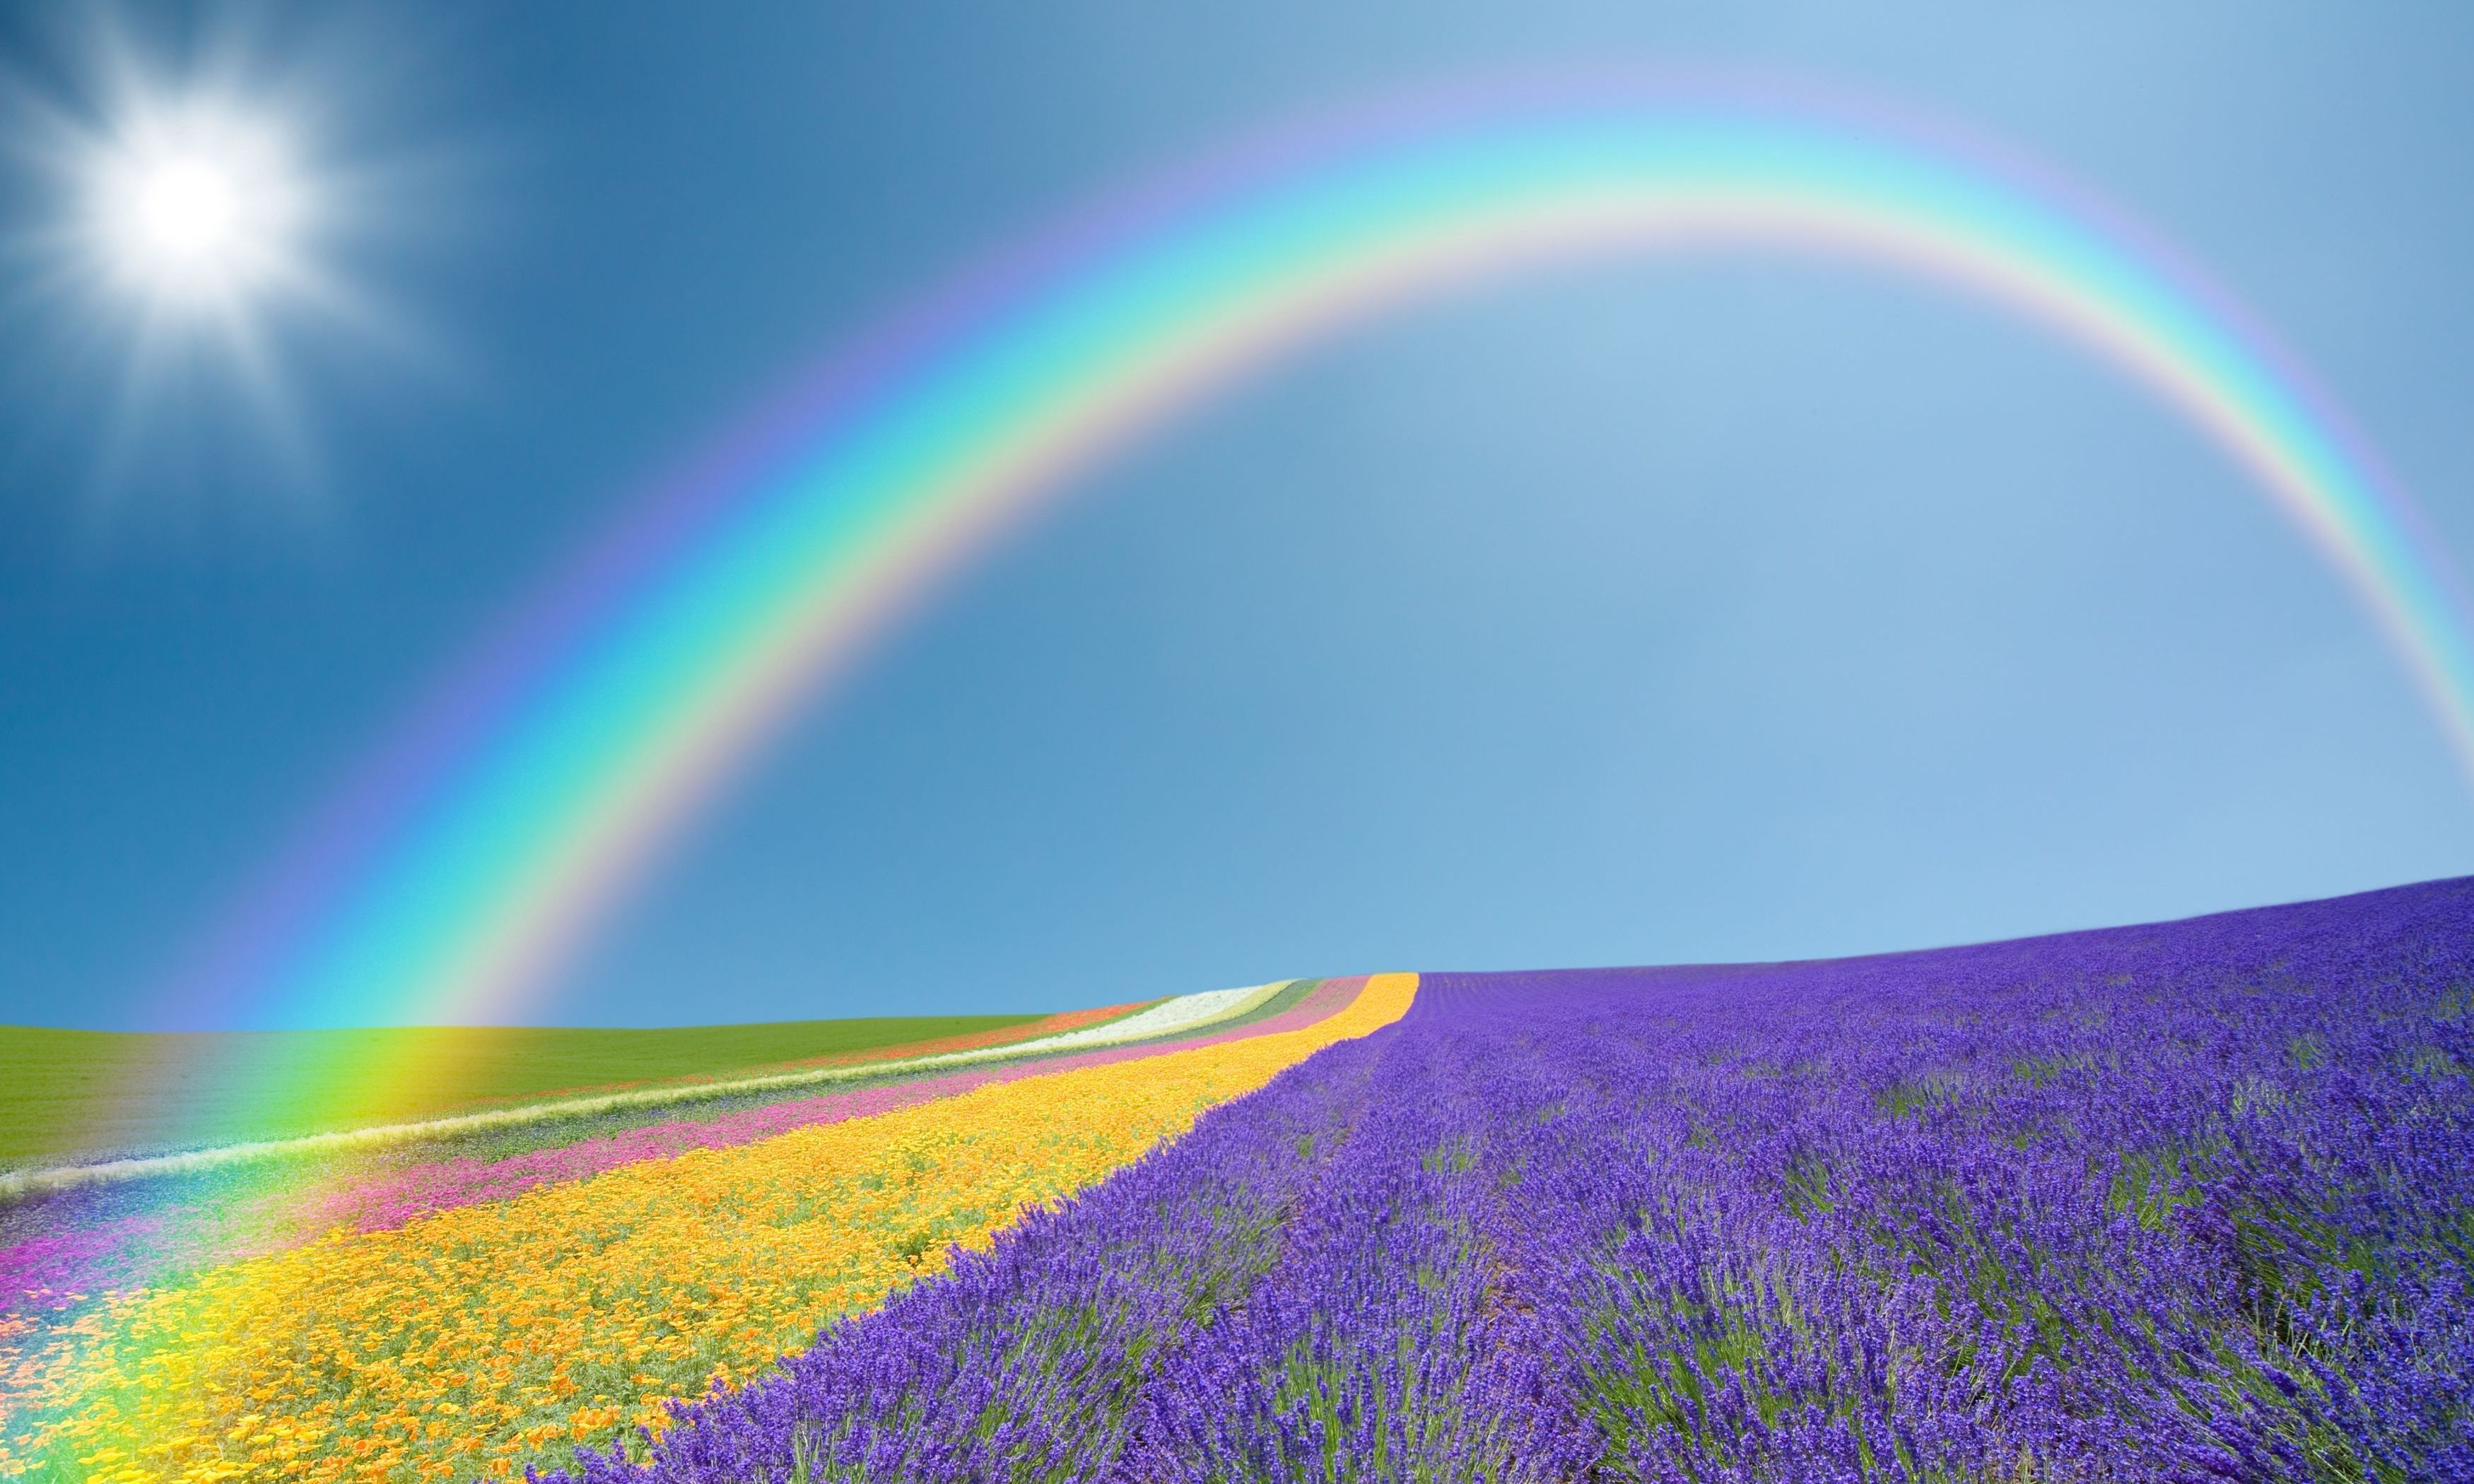 regenbogentapete,regenbogen,himmel,lavendel,natur,natürliche landschaft